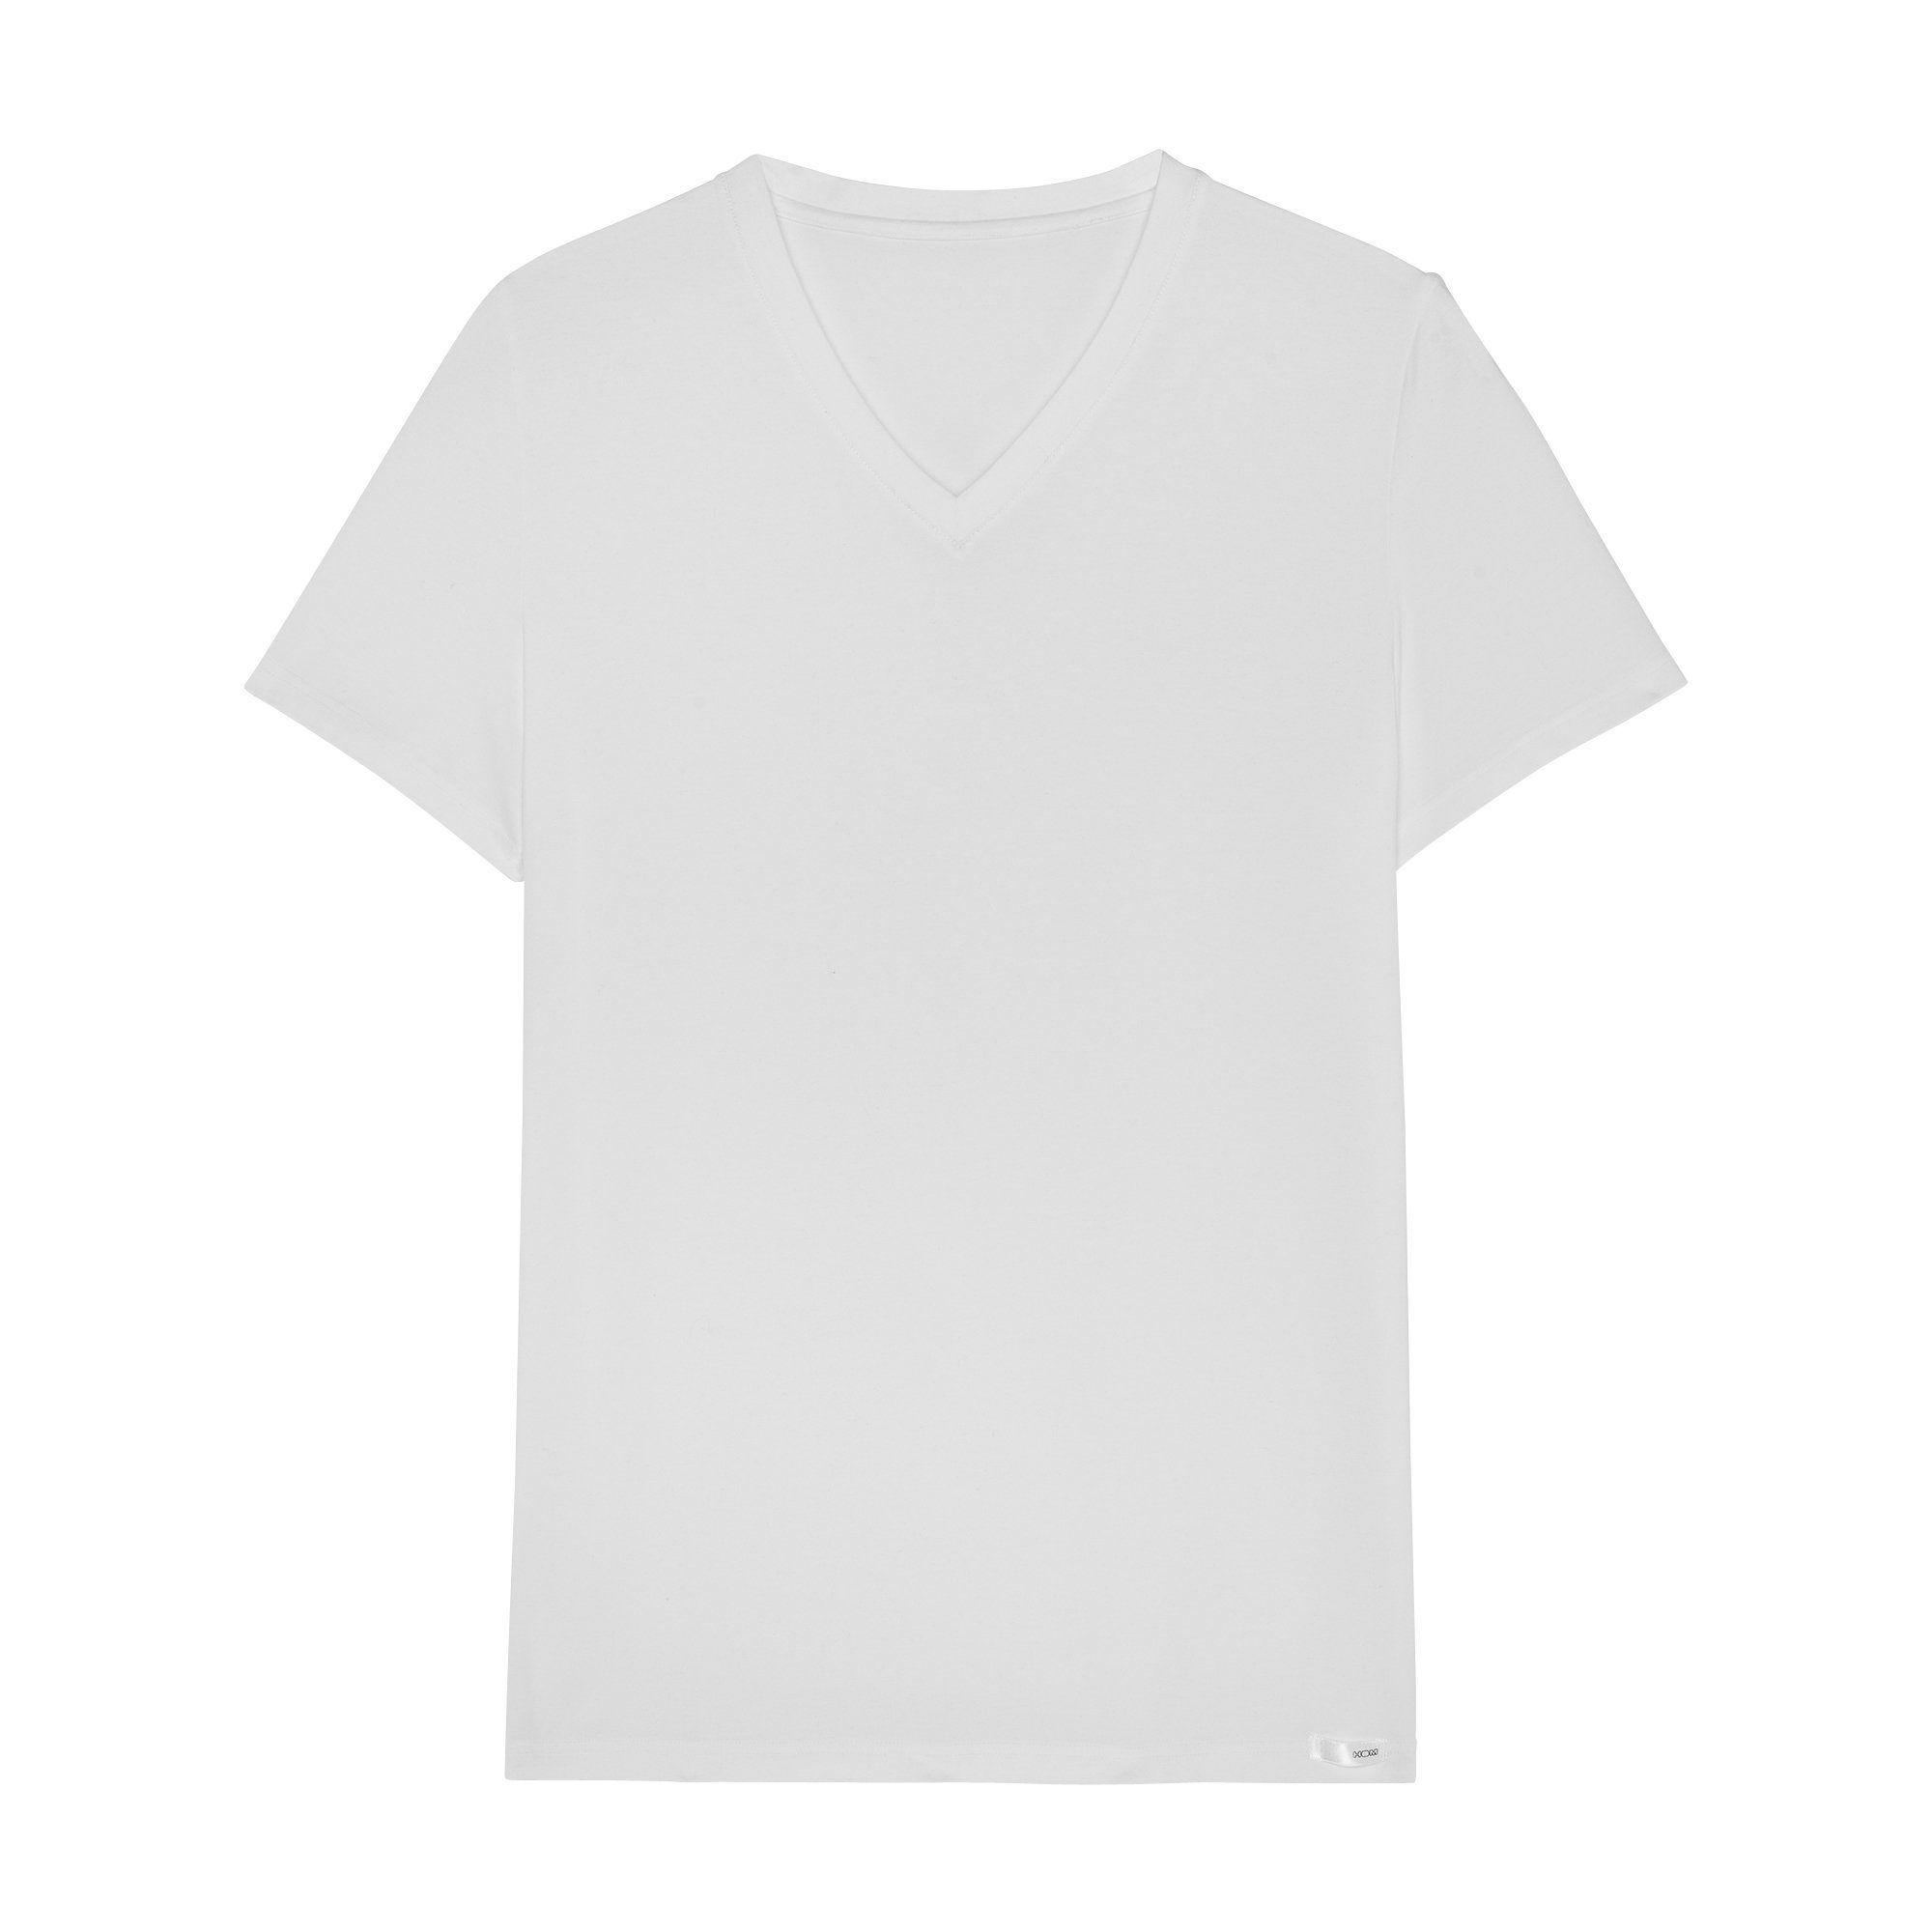 Hom V-Shirt HOM Tencel soft weiß white V-Neck Tee-Shirt